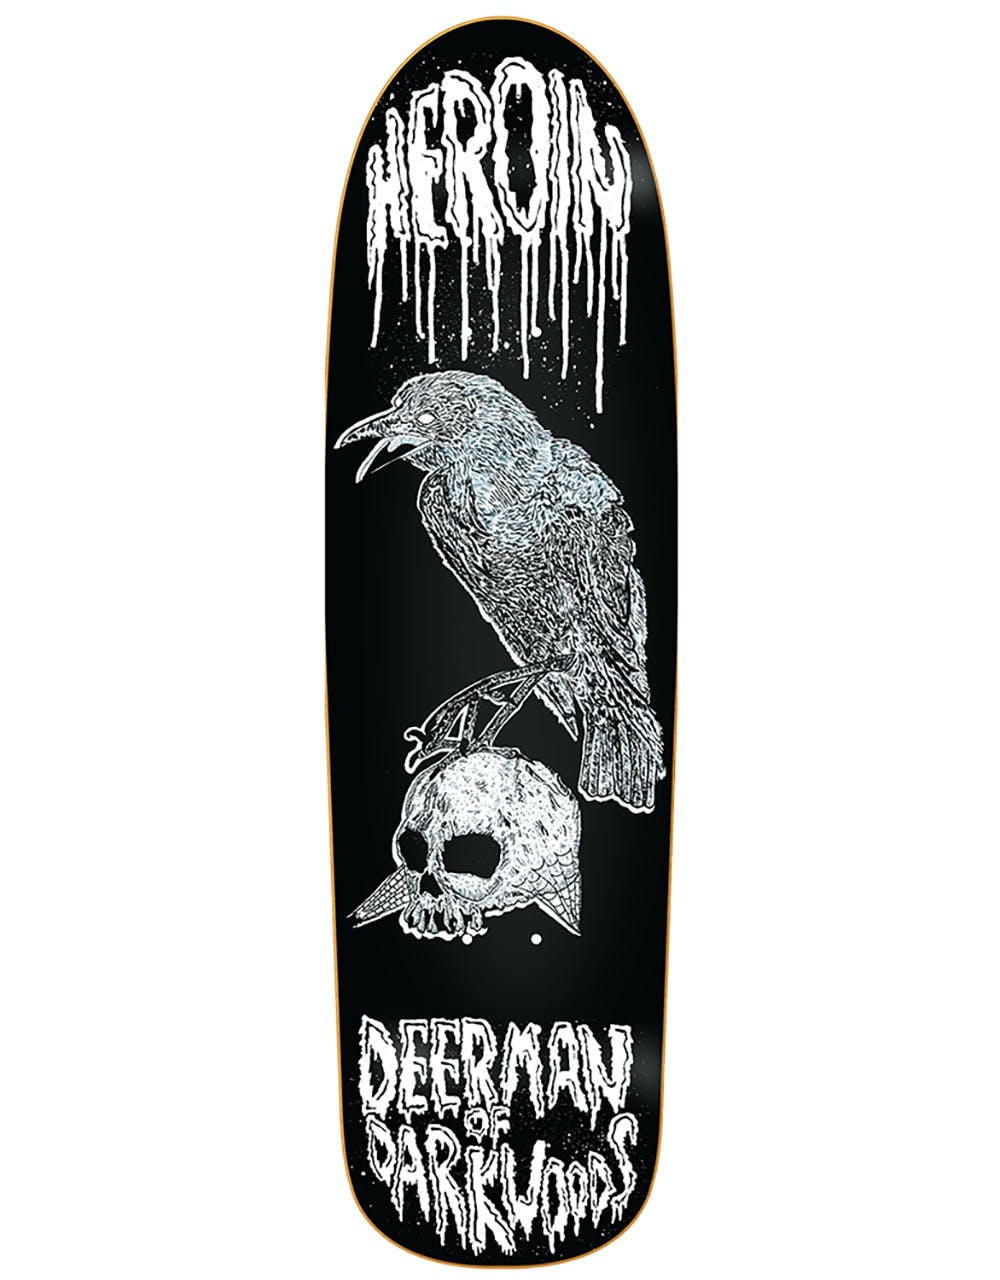 Heroin Deer Man of Dark Woods Raven Skateboard Deck - 9.25"